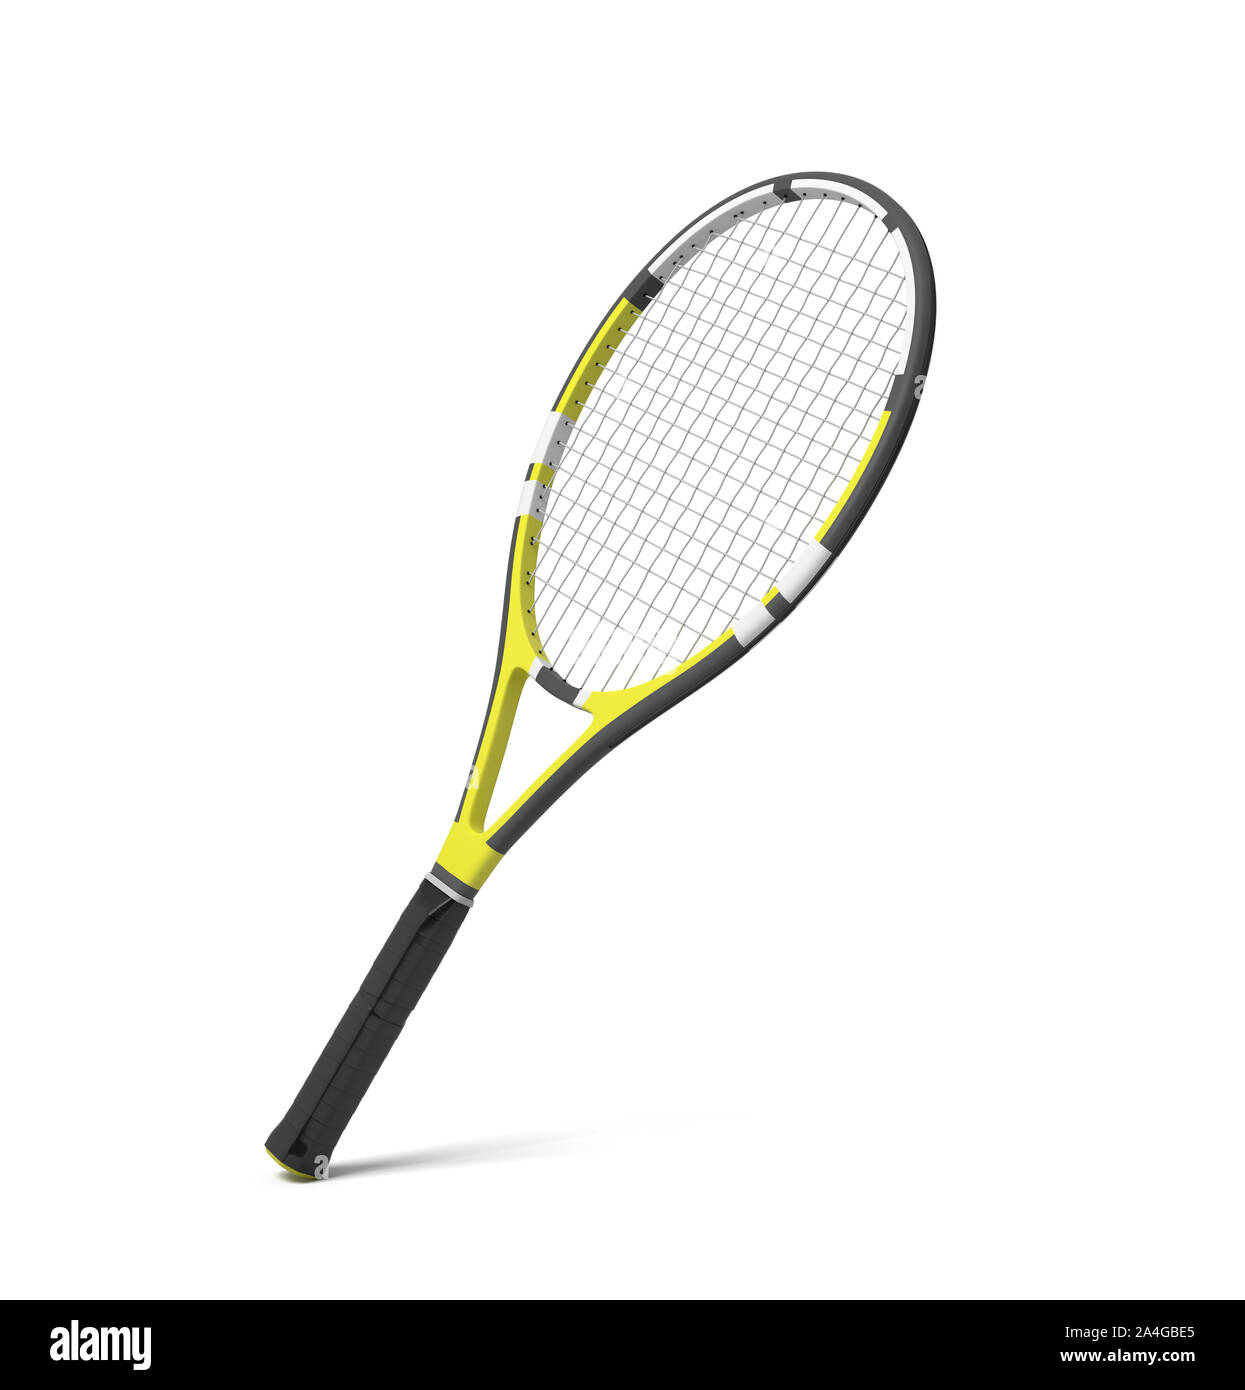 Representación 3D de una raqueta de tenis profesional con franjas amarillas  y negras. Engranaje de tenis. Equipamiento deportivo profesional. La  raqueta y la bola Fotografía de stock - Alamy